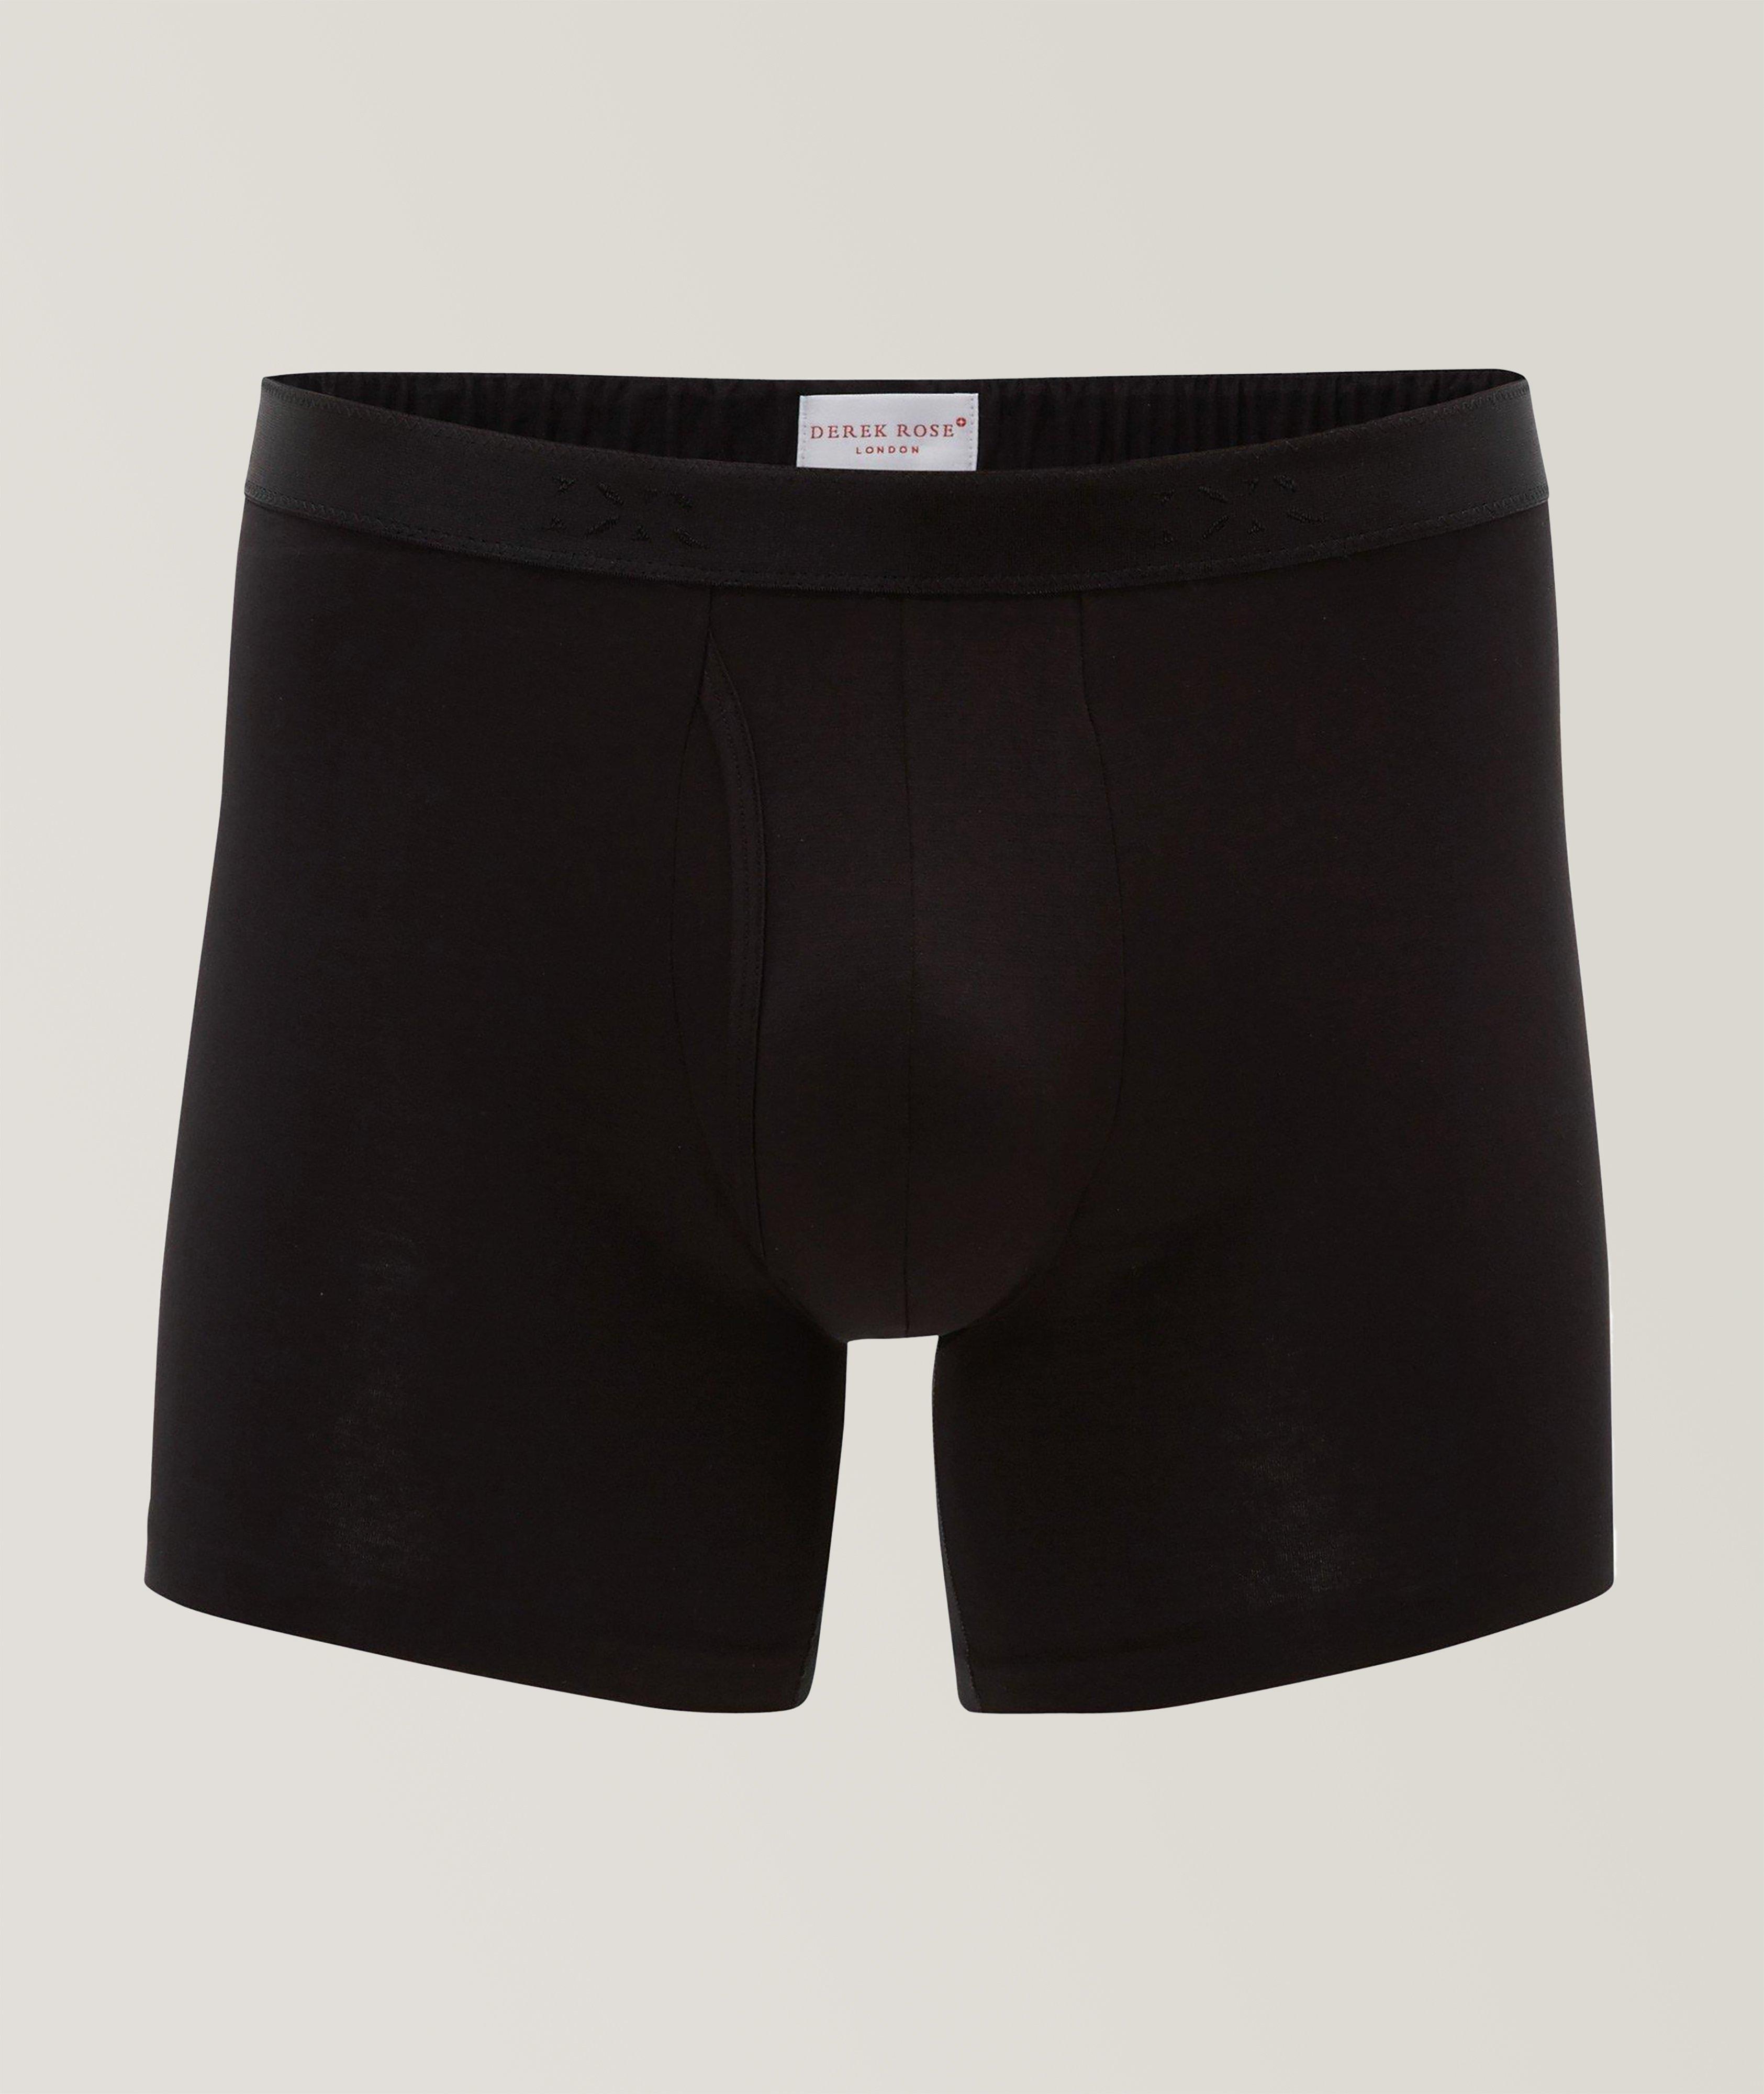 Men's Underwear in Briefs, Boxer Shorts & More – KJ Beckett